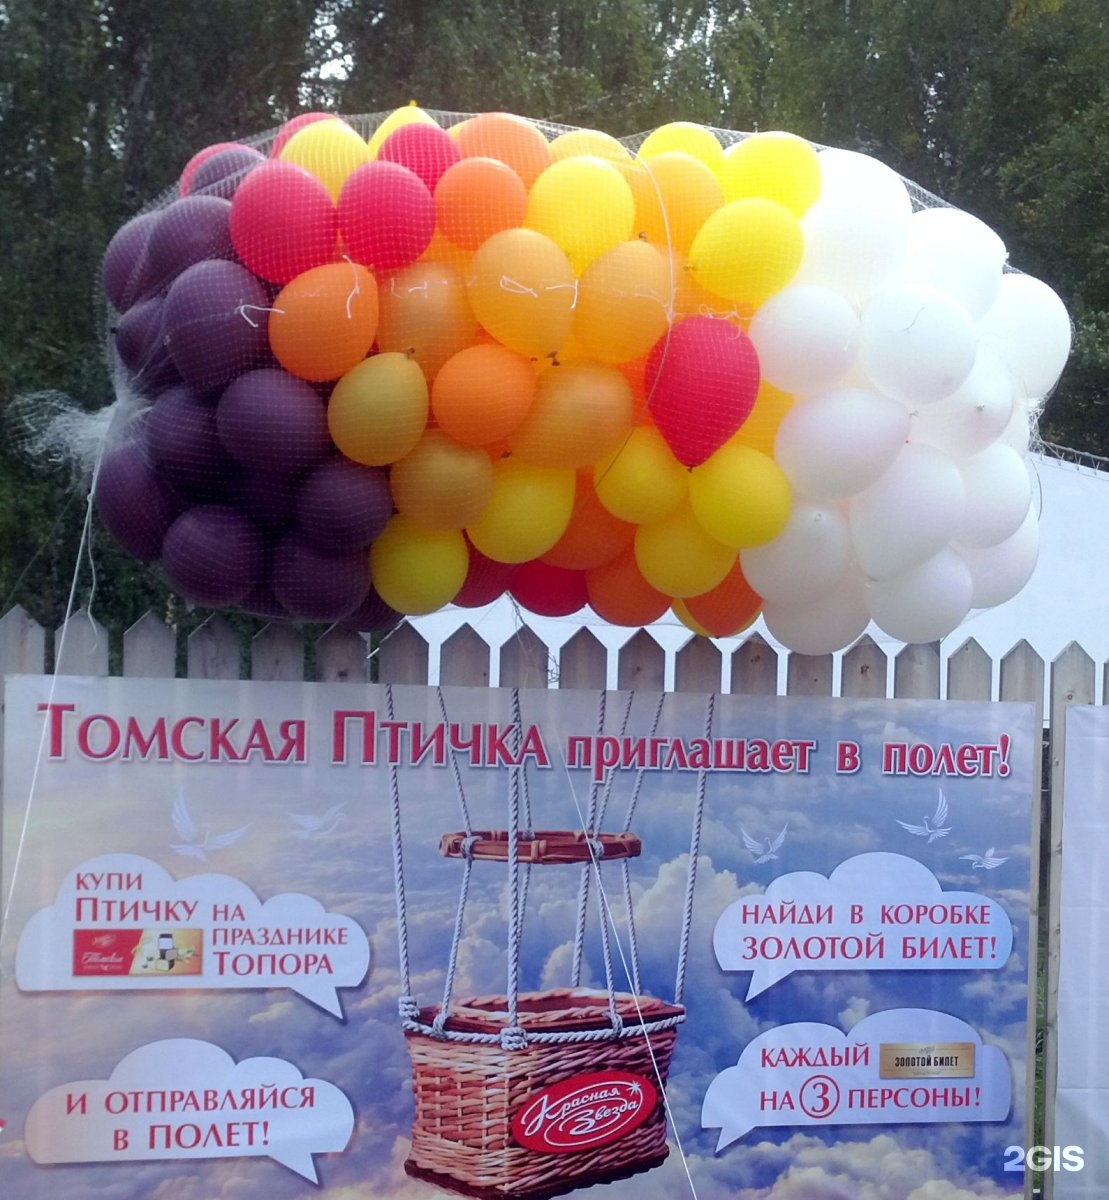 Воздушный шар томск. Шарики Томск. Воздушные шары в Пушкине. Объявление доставки воздушных шаров по району.